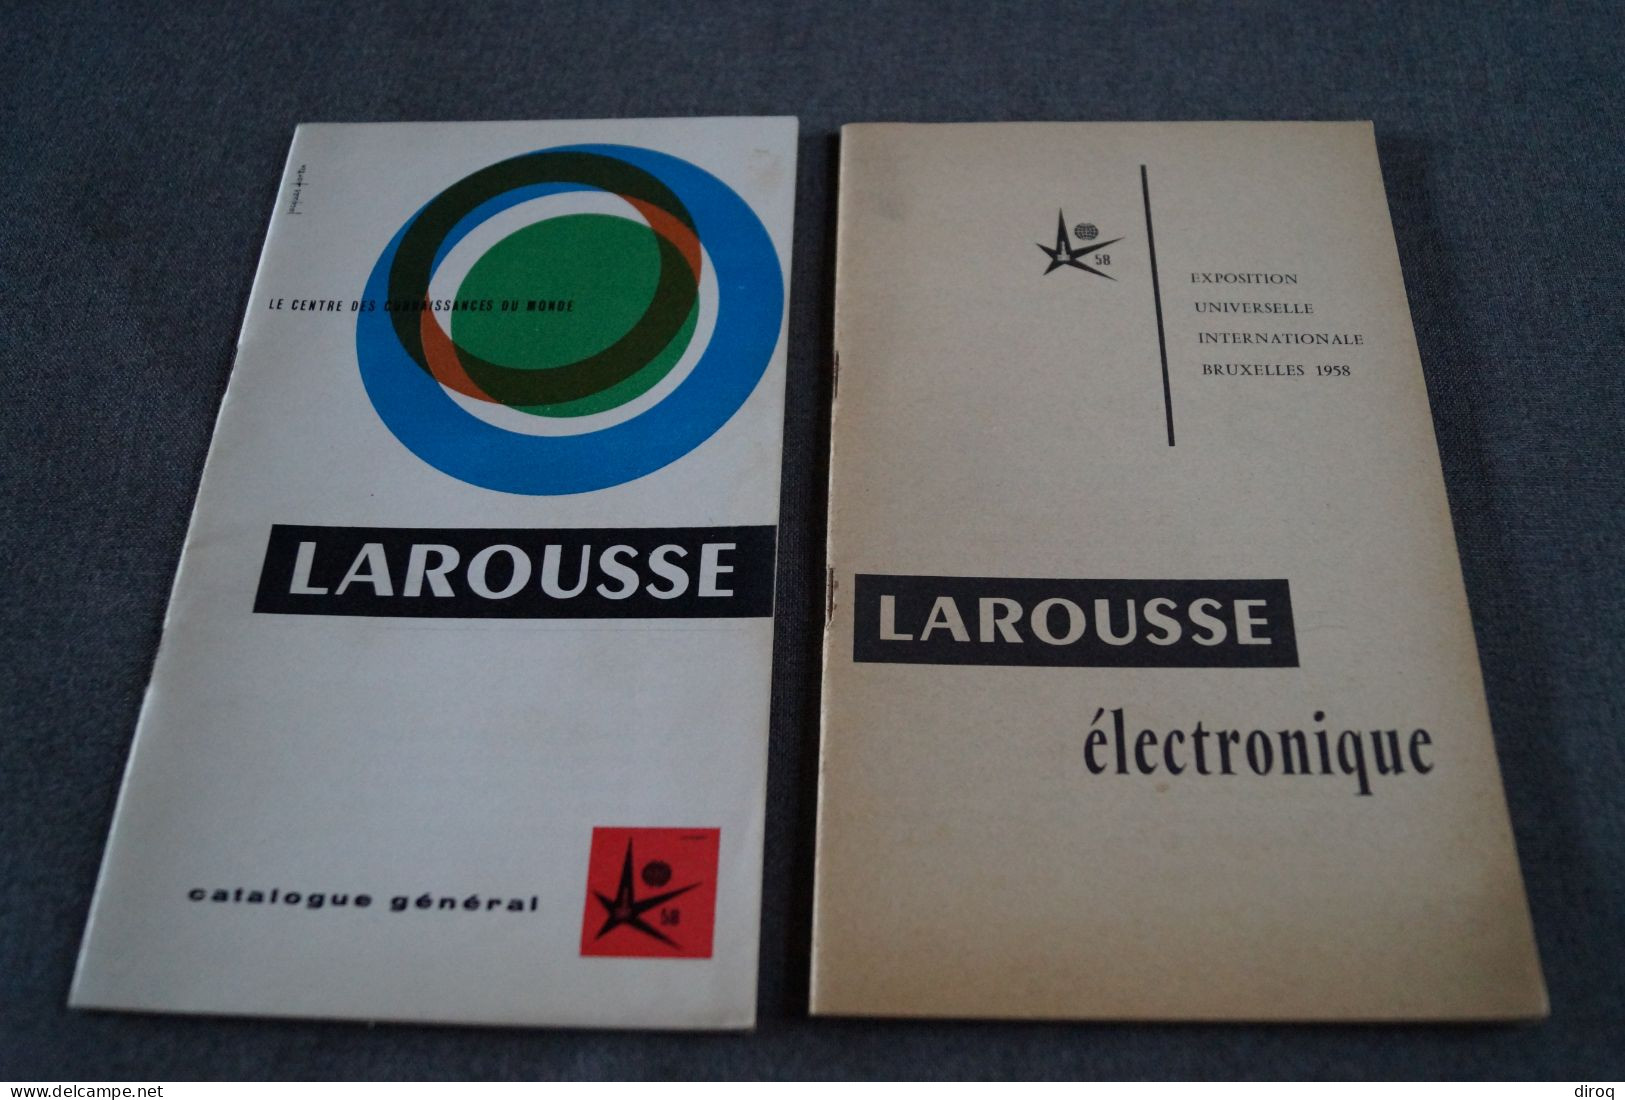 Expo 1958, Bruxelles,publicitaire,Larousse,2 Ouvrages,44 Page Et 34 Pages,20,5 Cm./12,5 Cm. - Publicidad